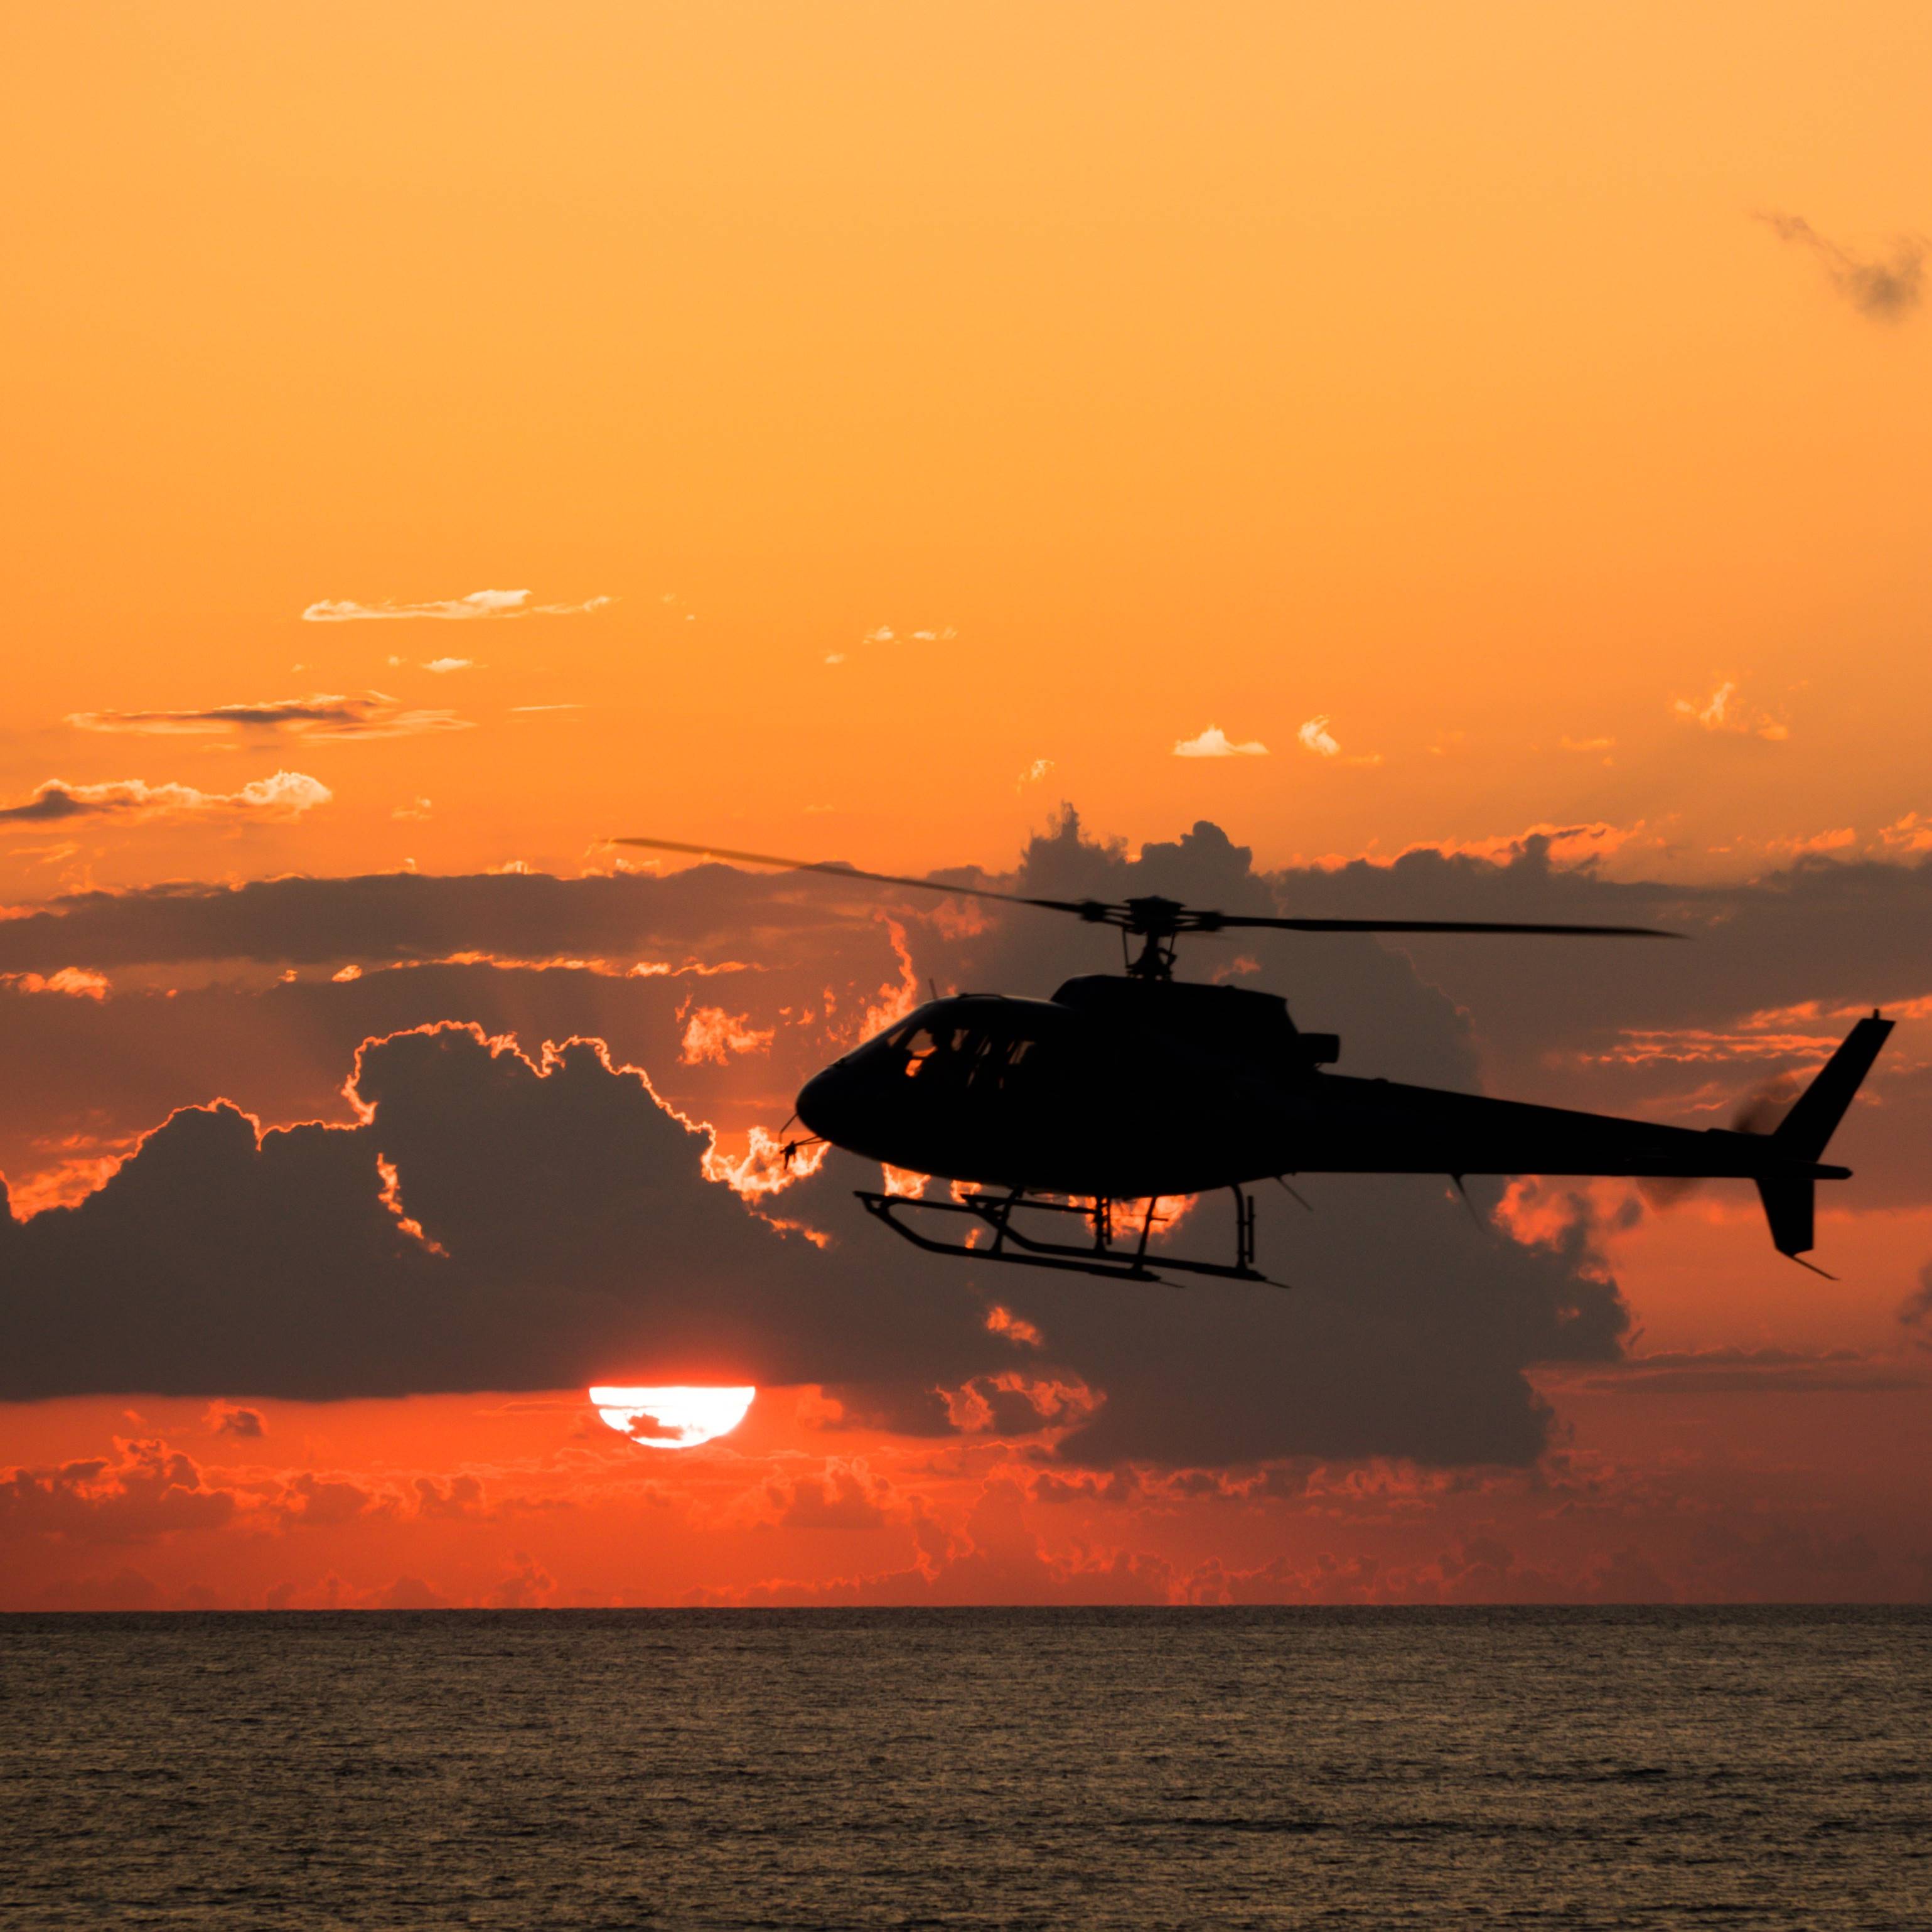  Zbor cu Elicopterul Experiență Cadou - Zbor de agrement pe litoral, cu elicopterul |3 persoane, smartexperience.ro